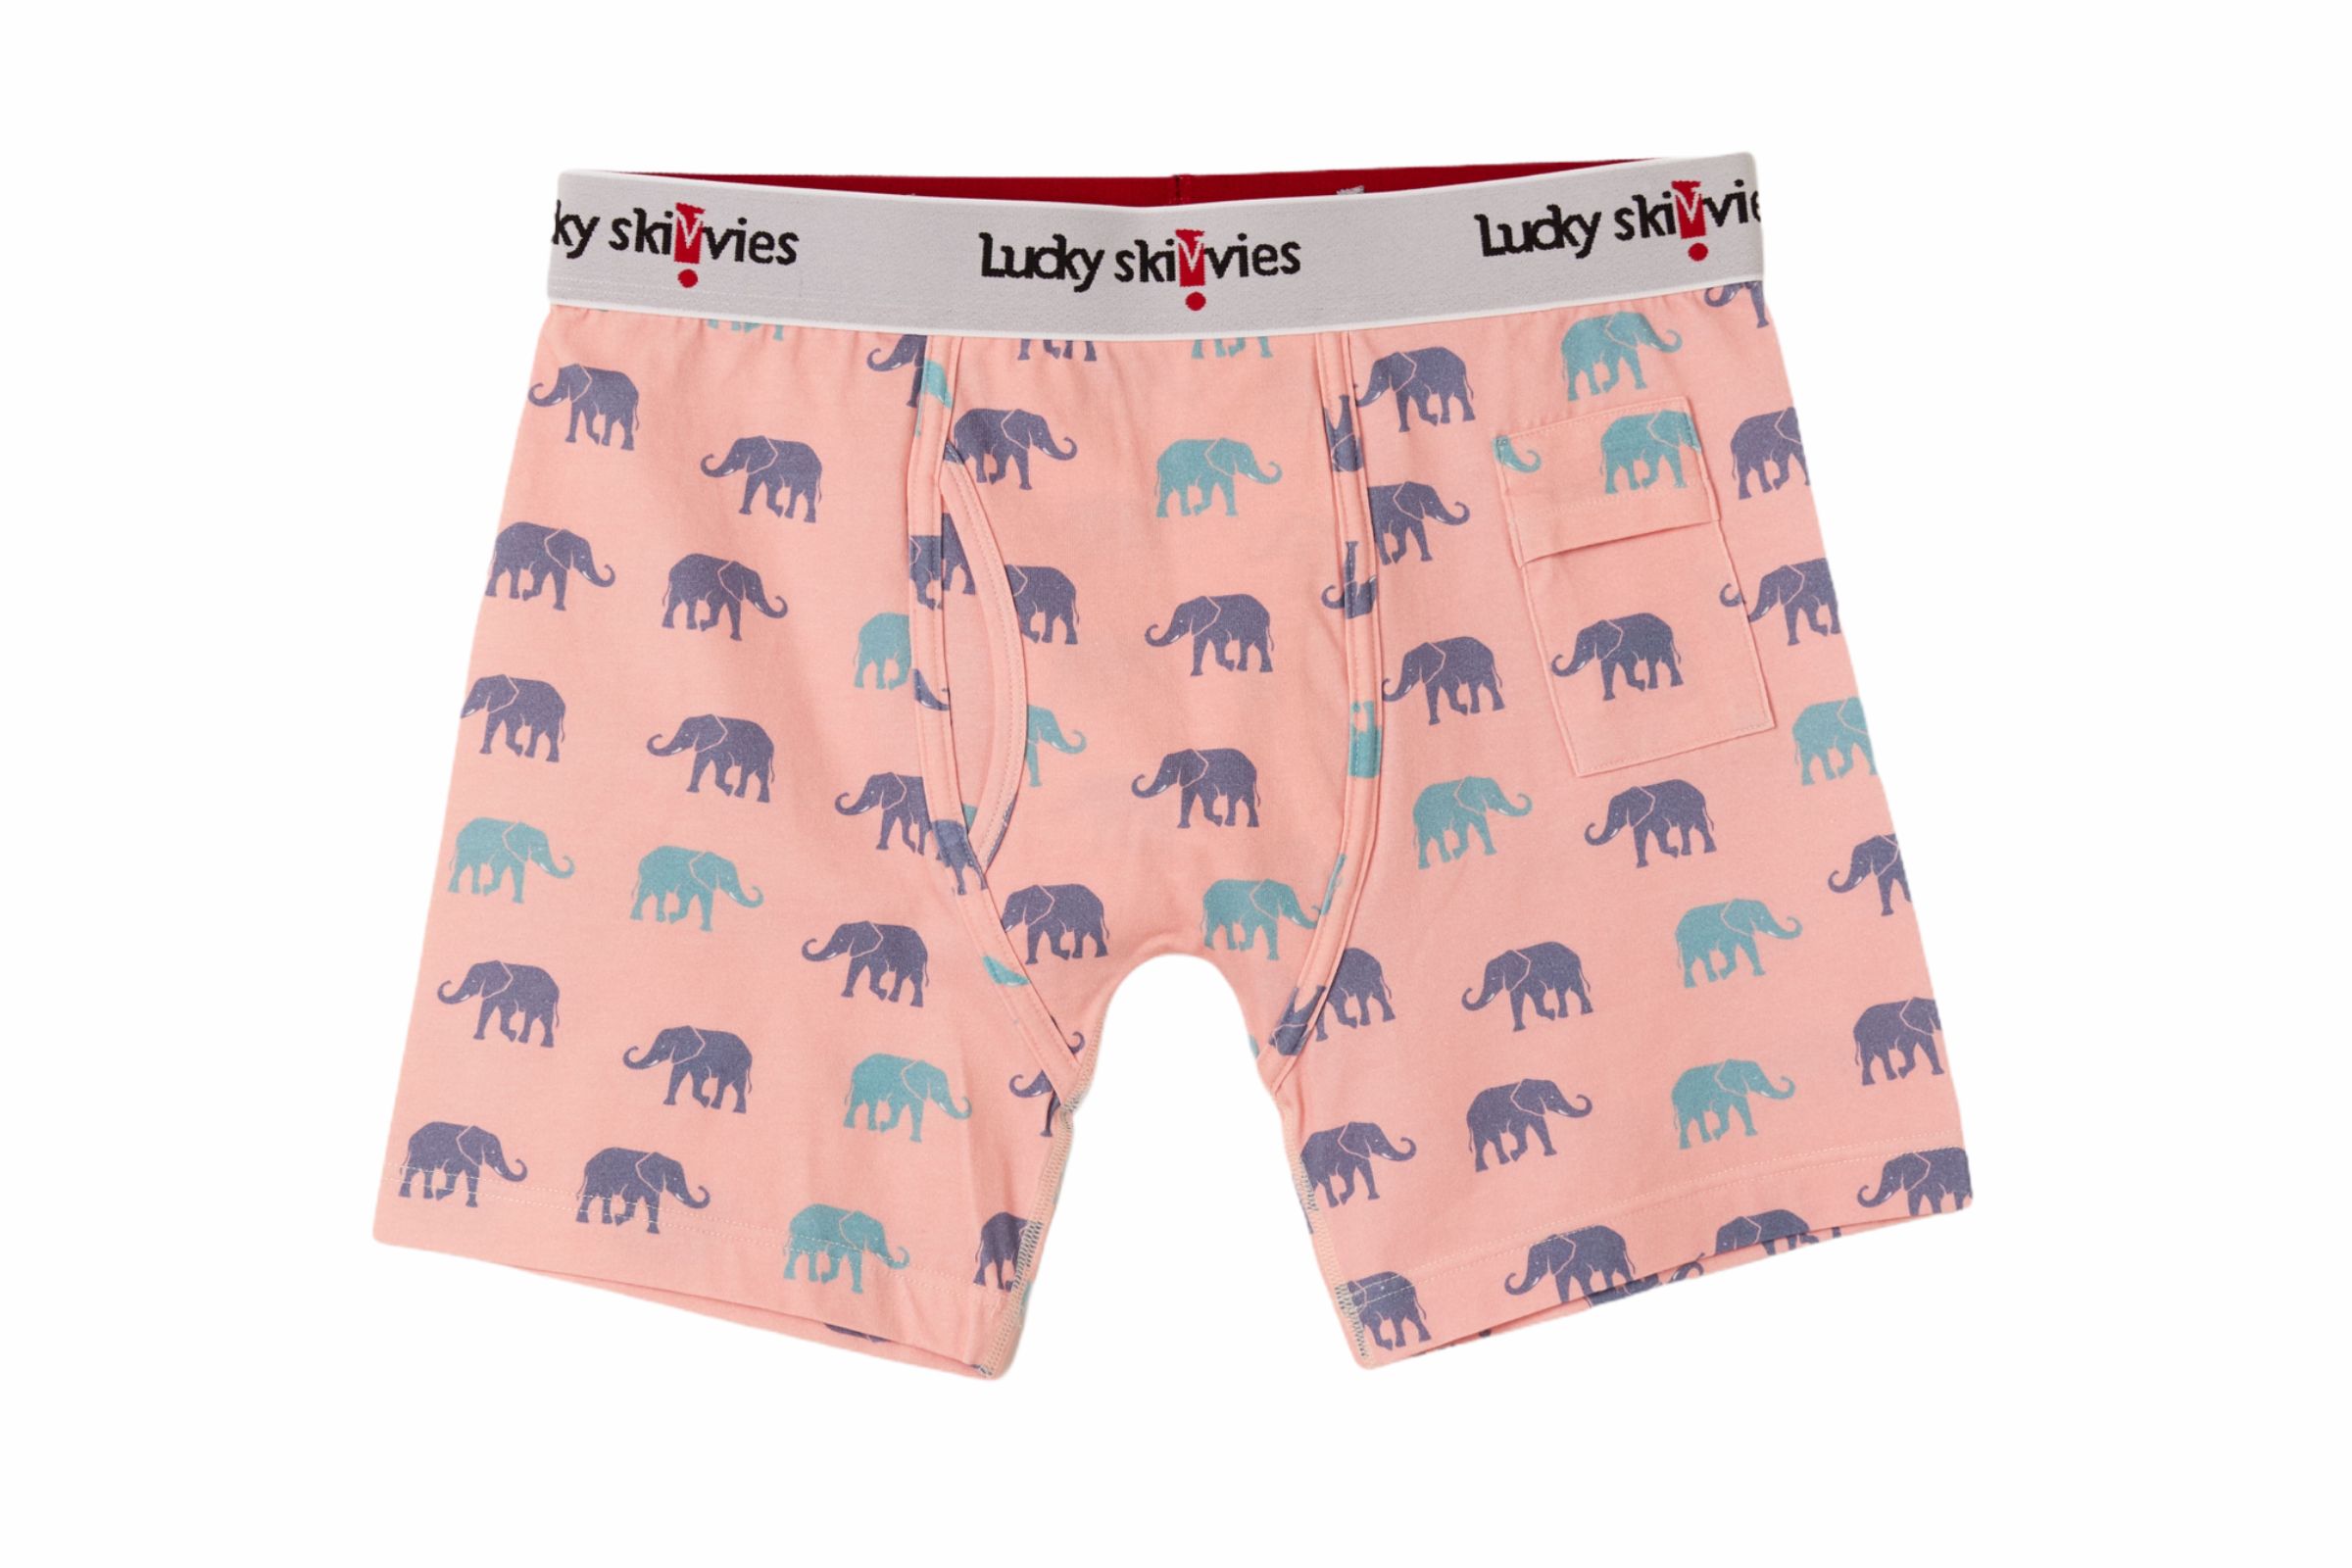 Elephant - Lucky Skivvies